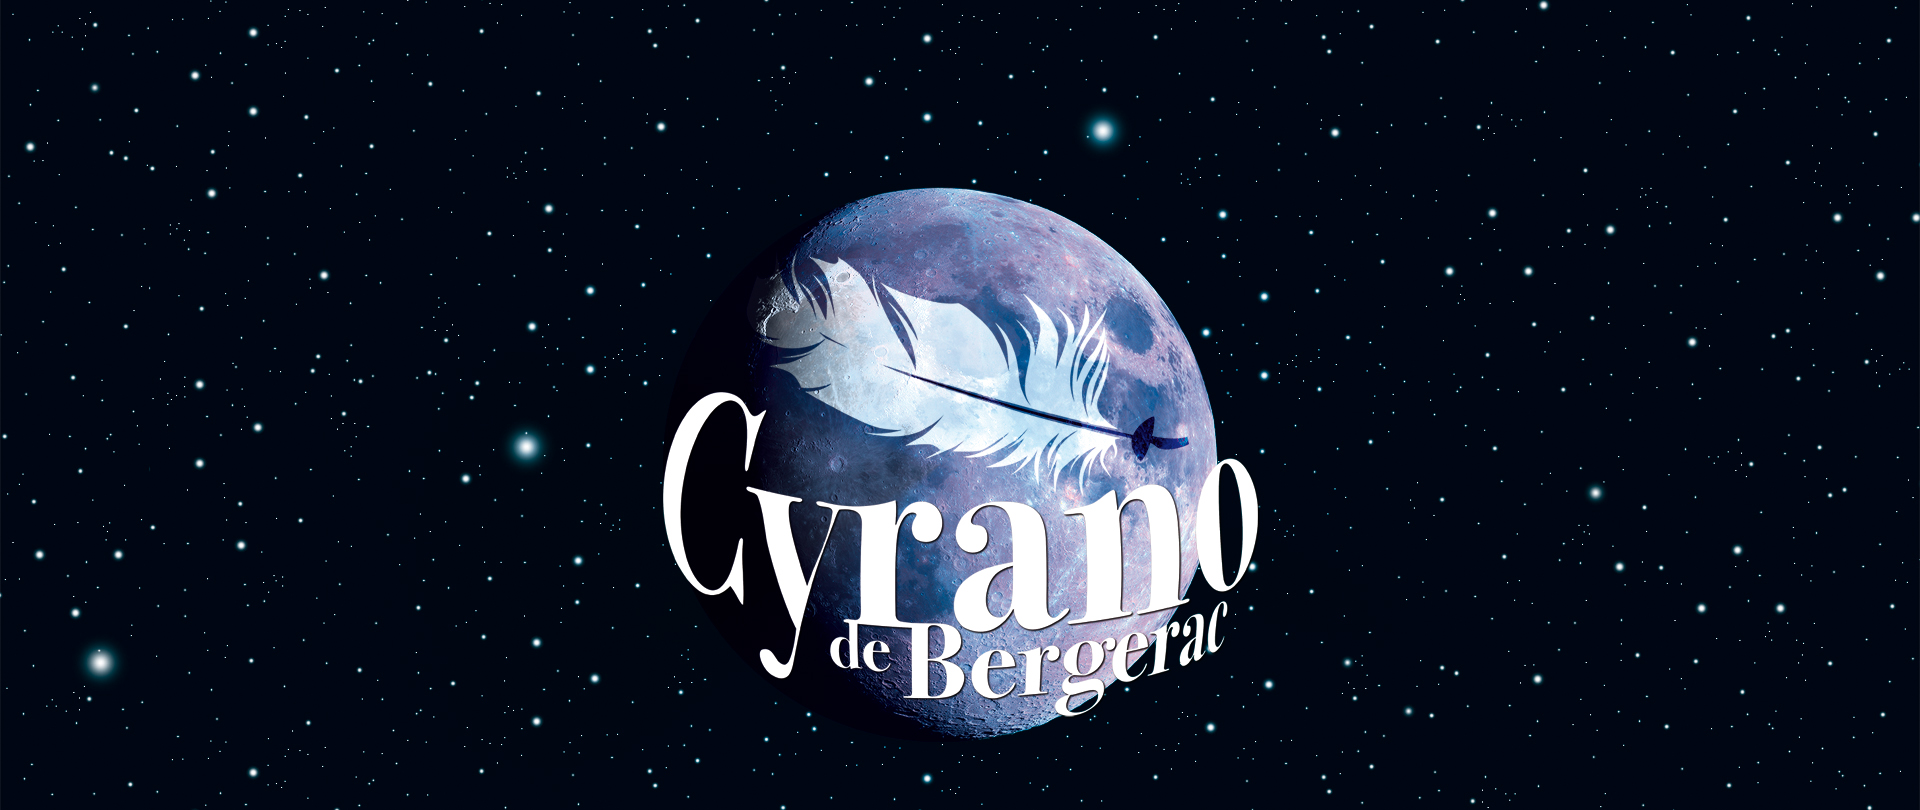 Cyrano de Bergerac (visuel)